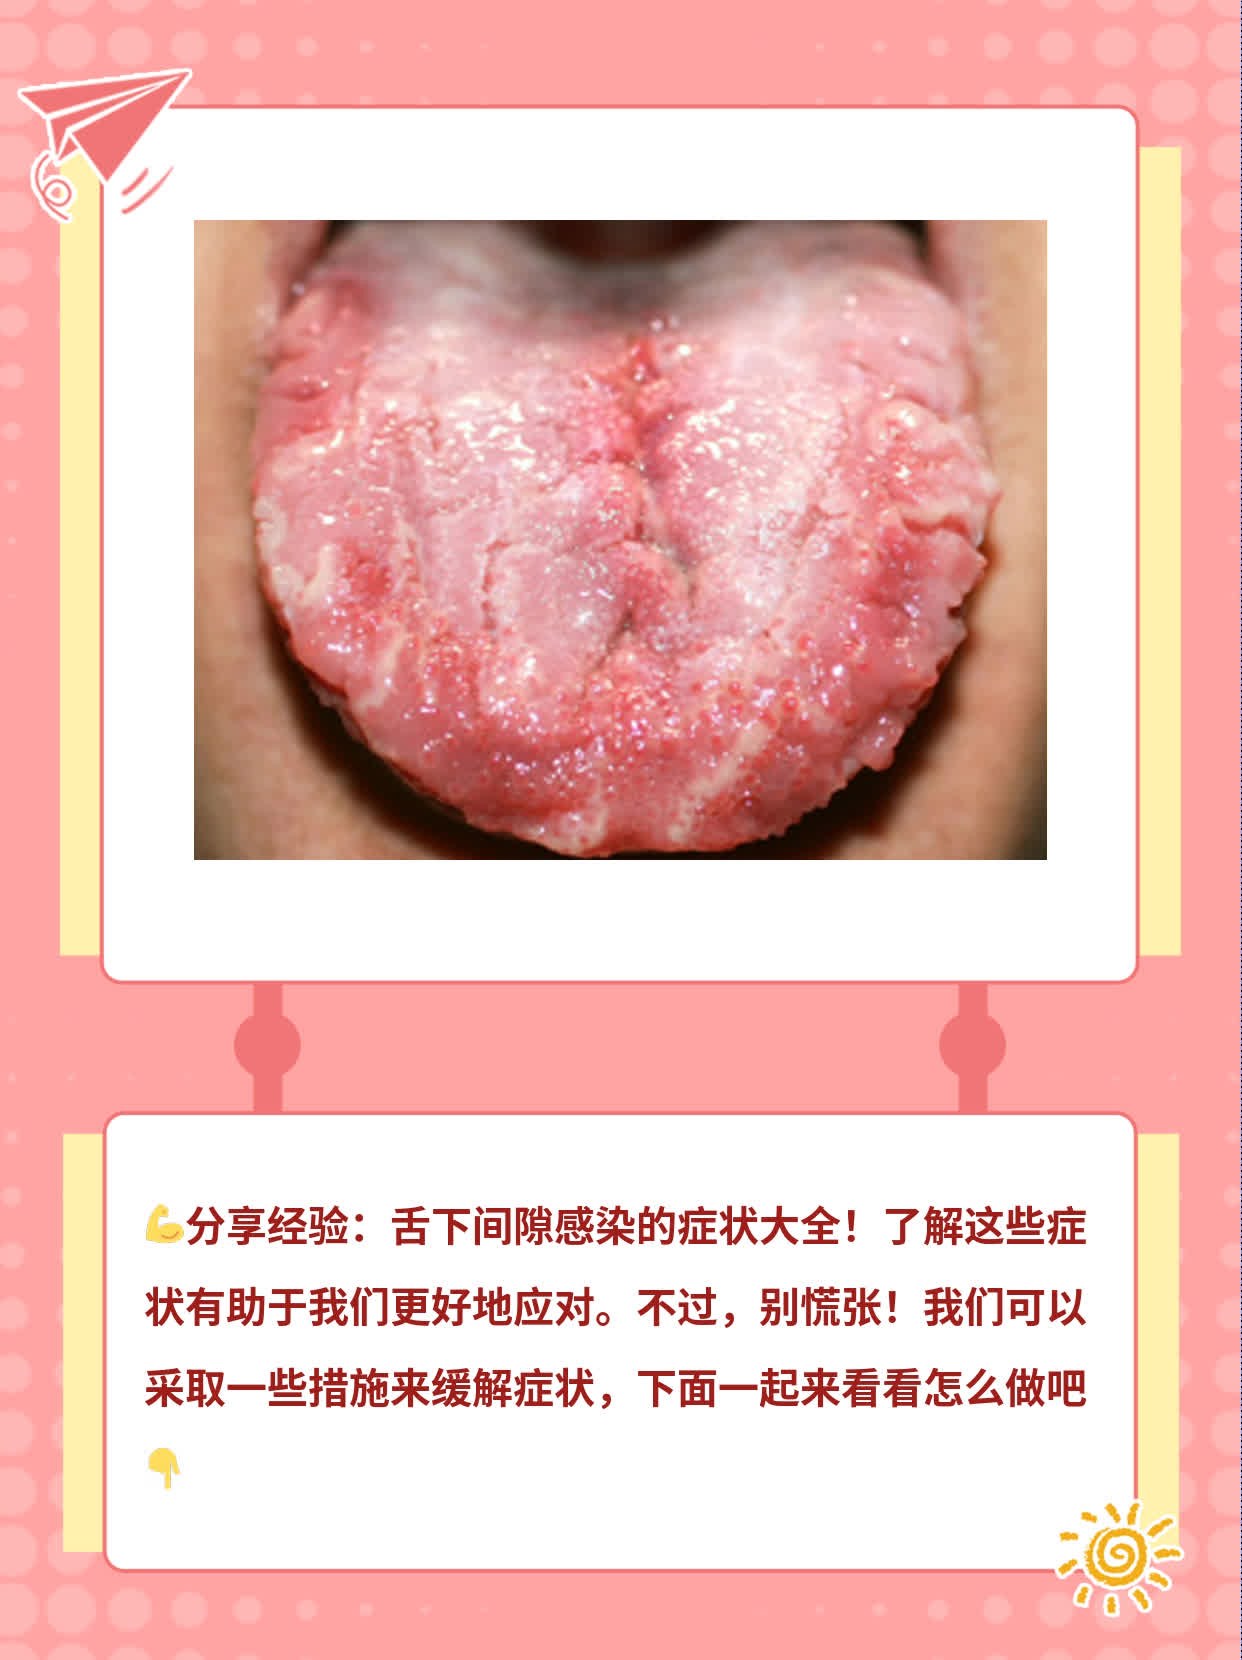 「分享经验」舌下间隙感染的症状大全